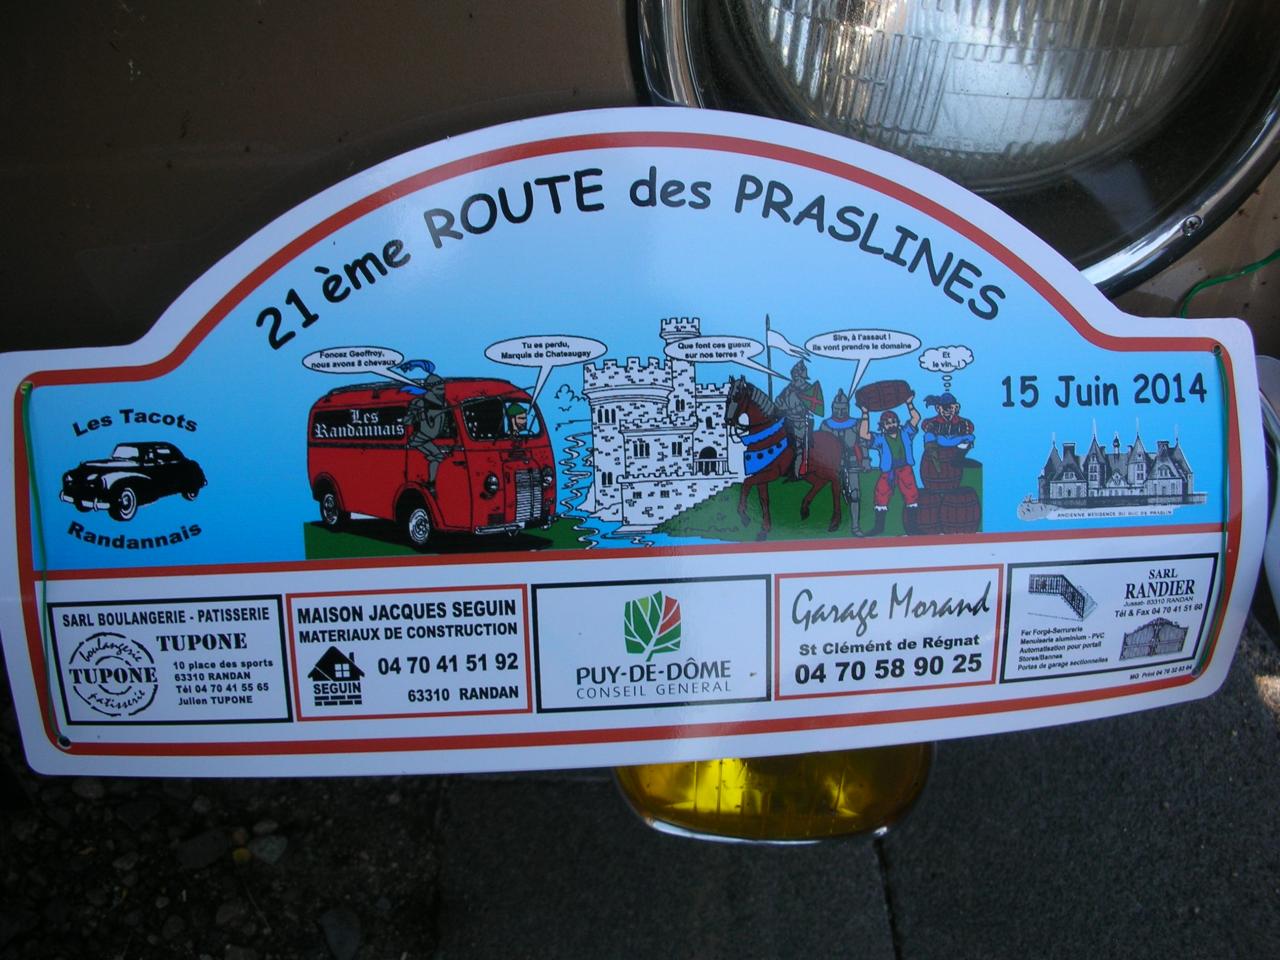 La route des Praslines 15 06 2014 (1)